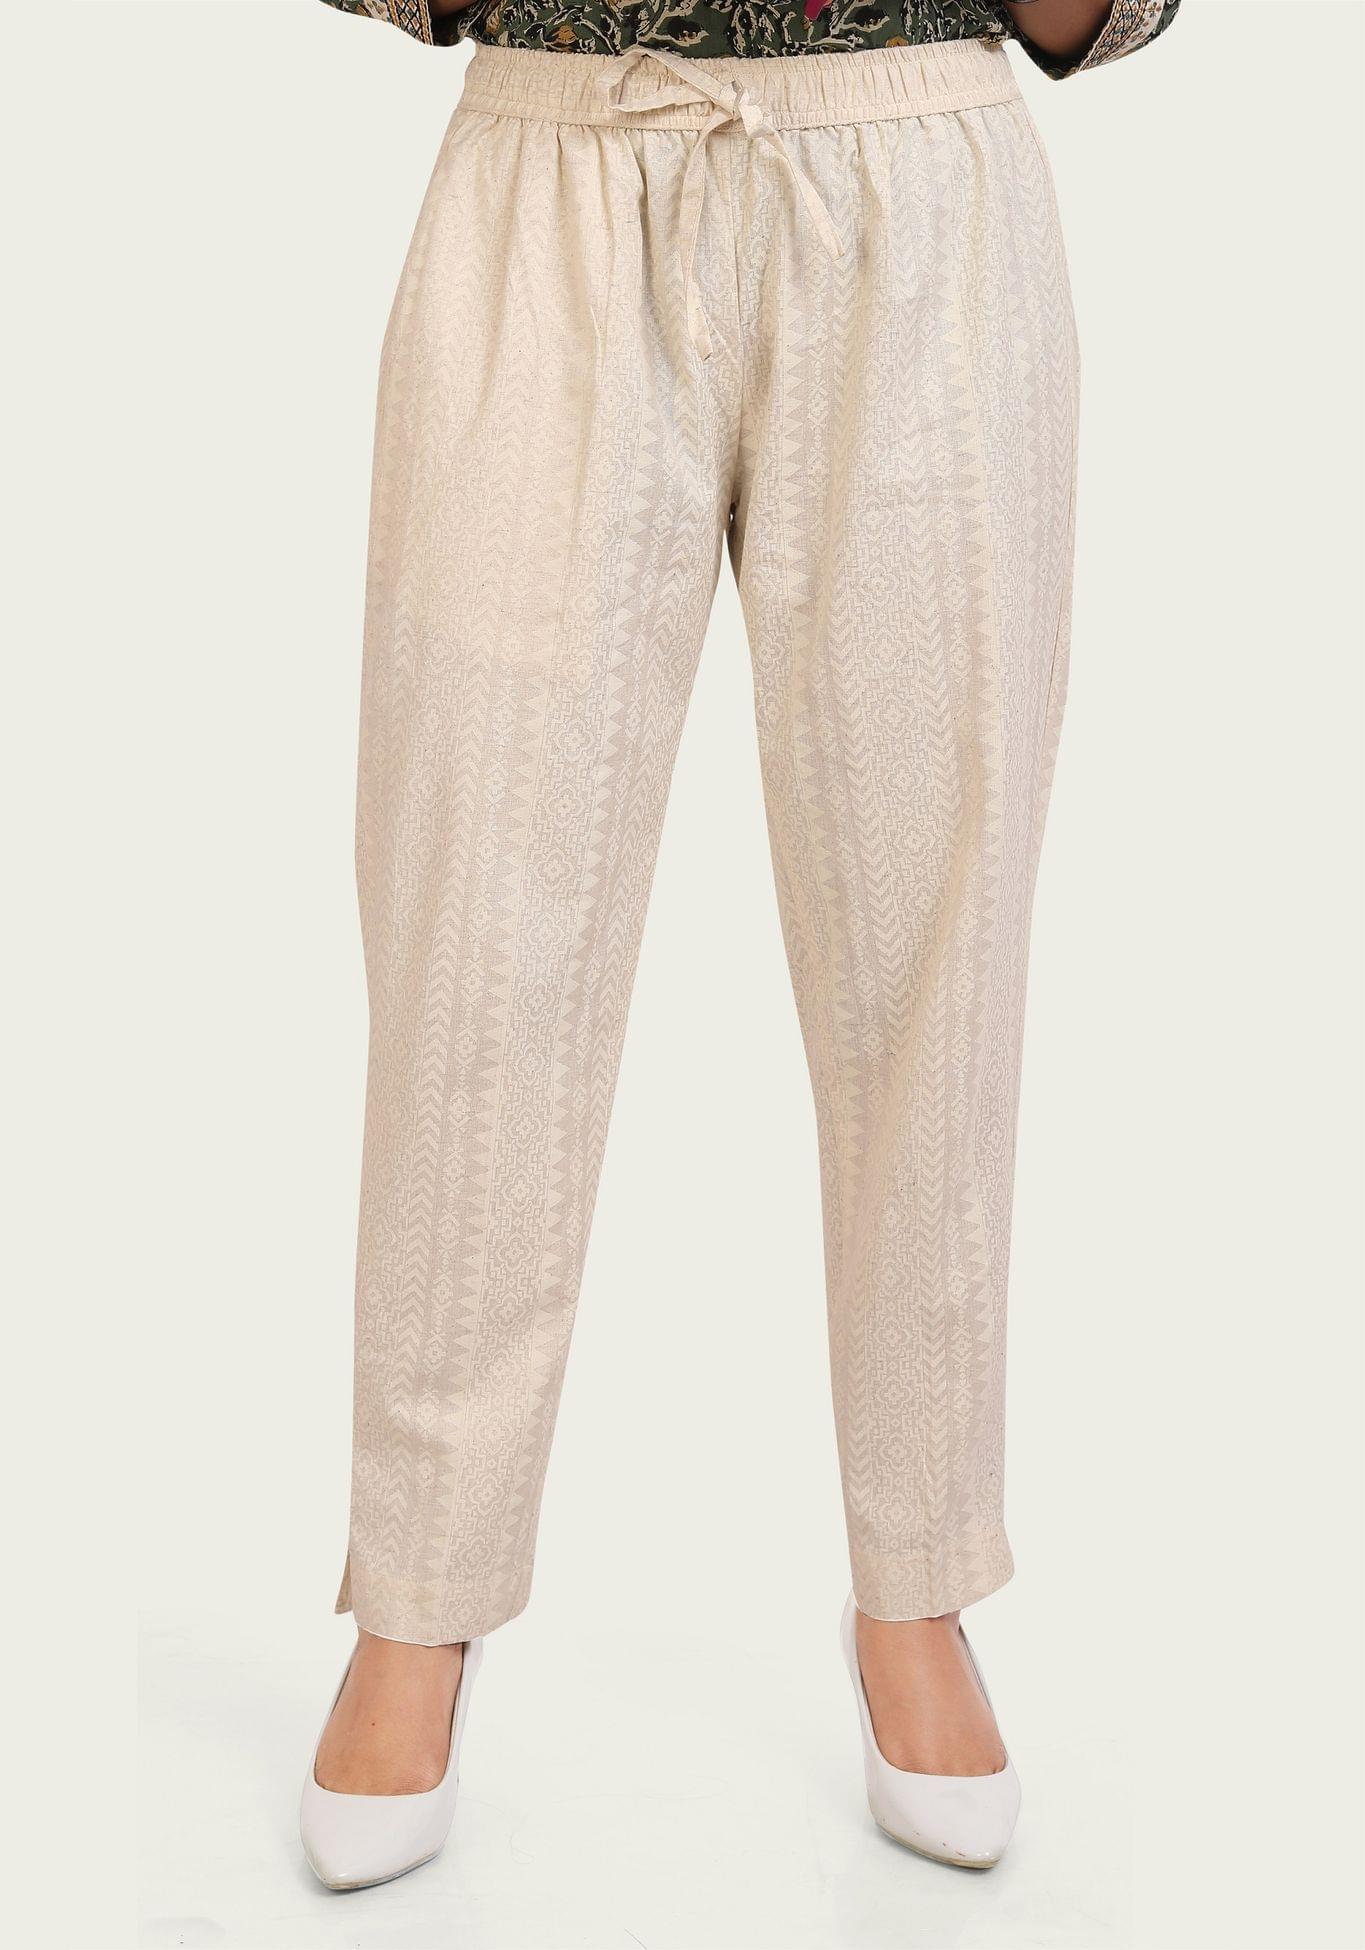 Cream Regular Fit Printed Trousers Pant